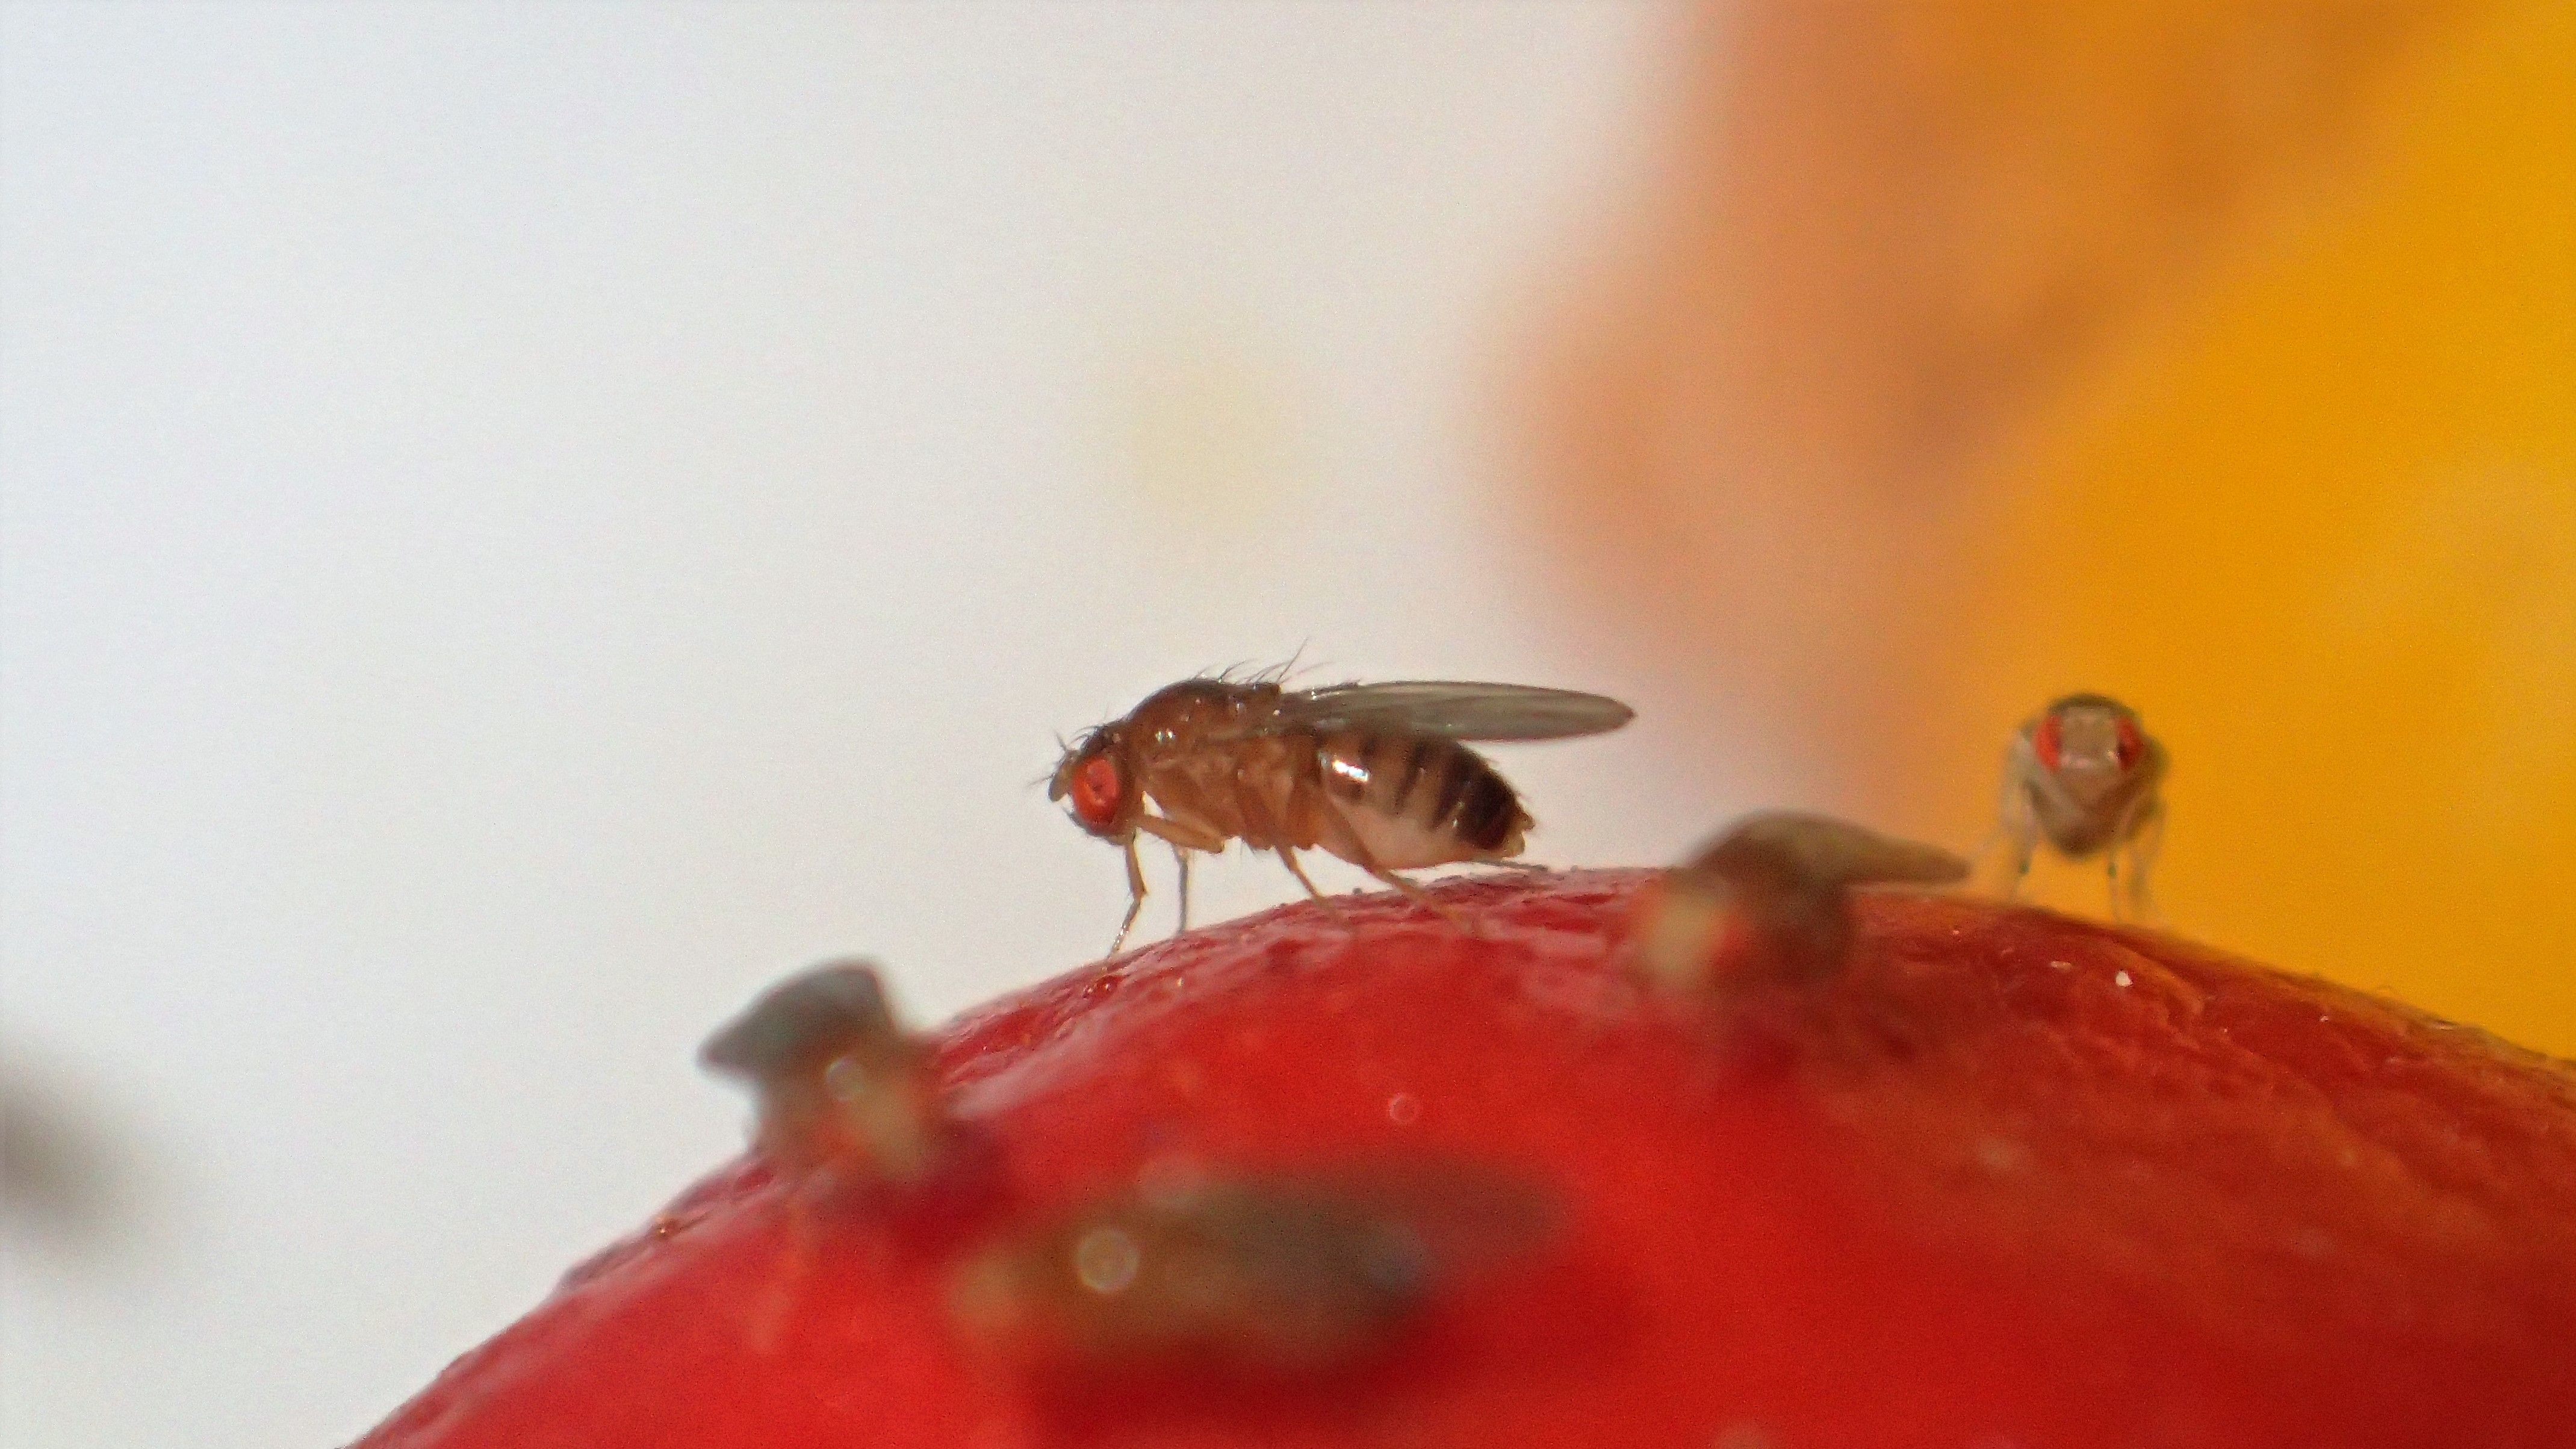 File:Fruit fly trap.jpg - Wikipedia